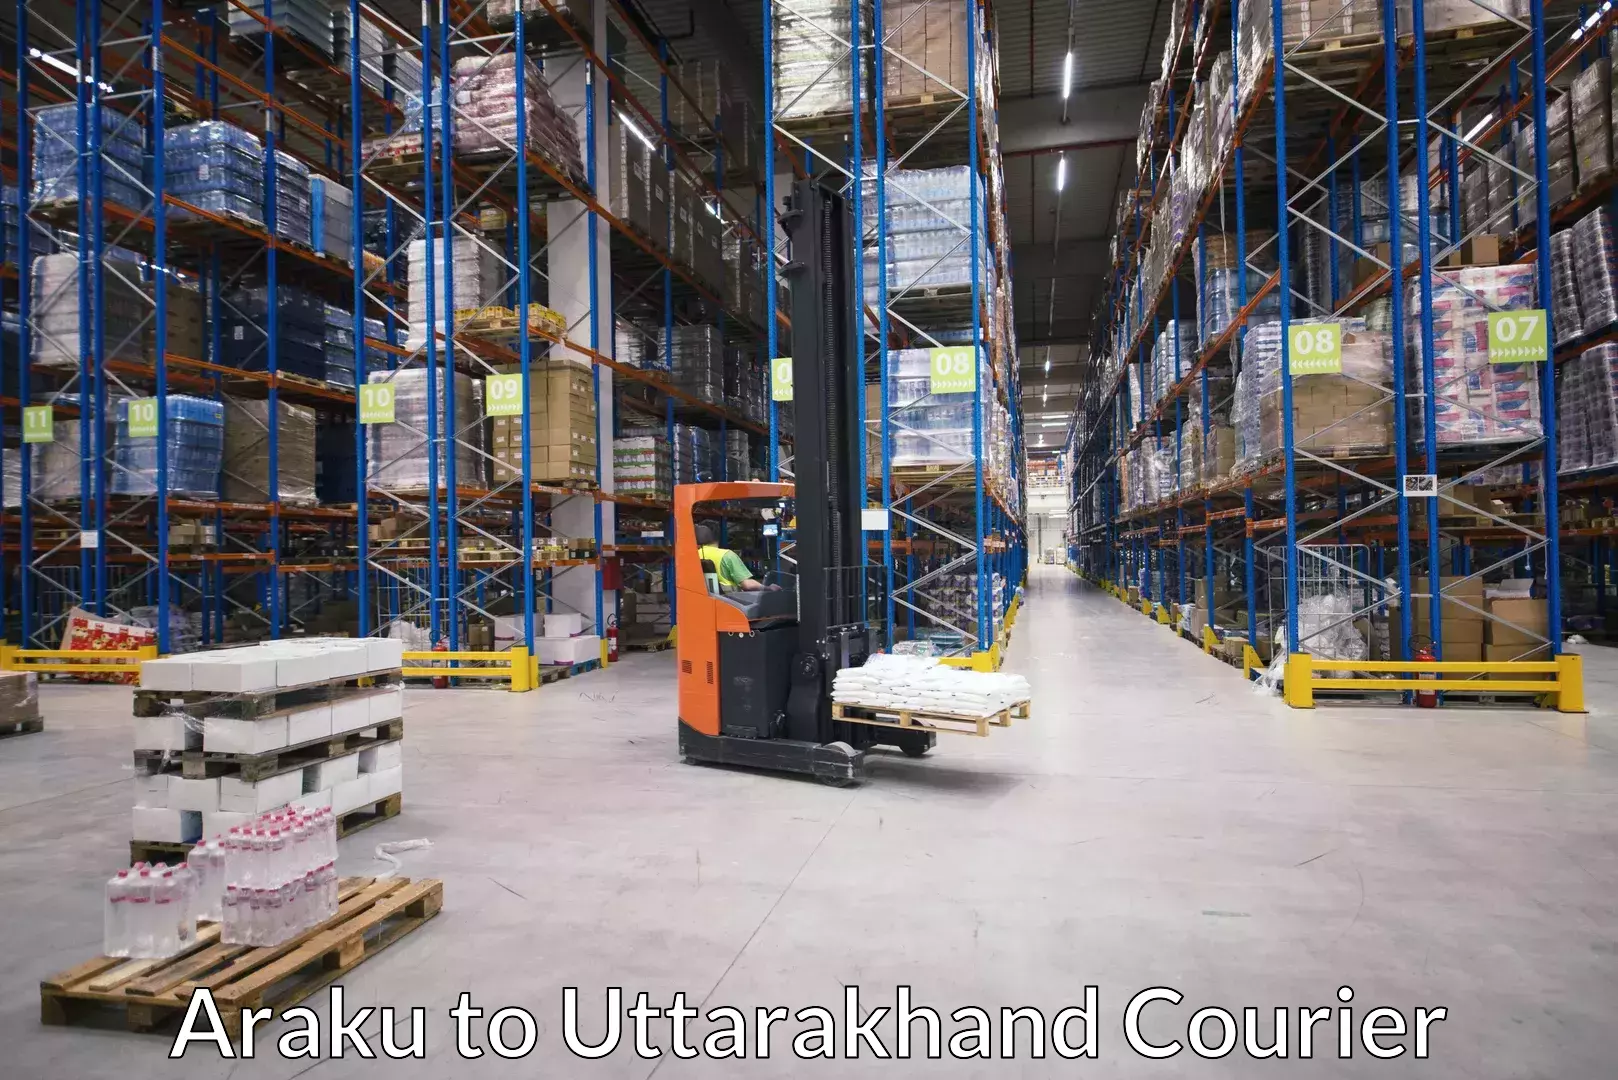 Moving and storage services Araku to Uttarakhand